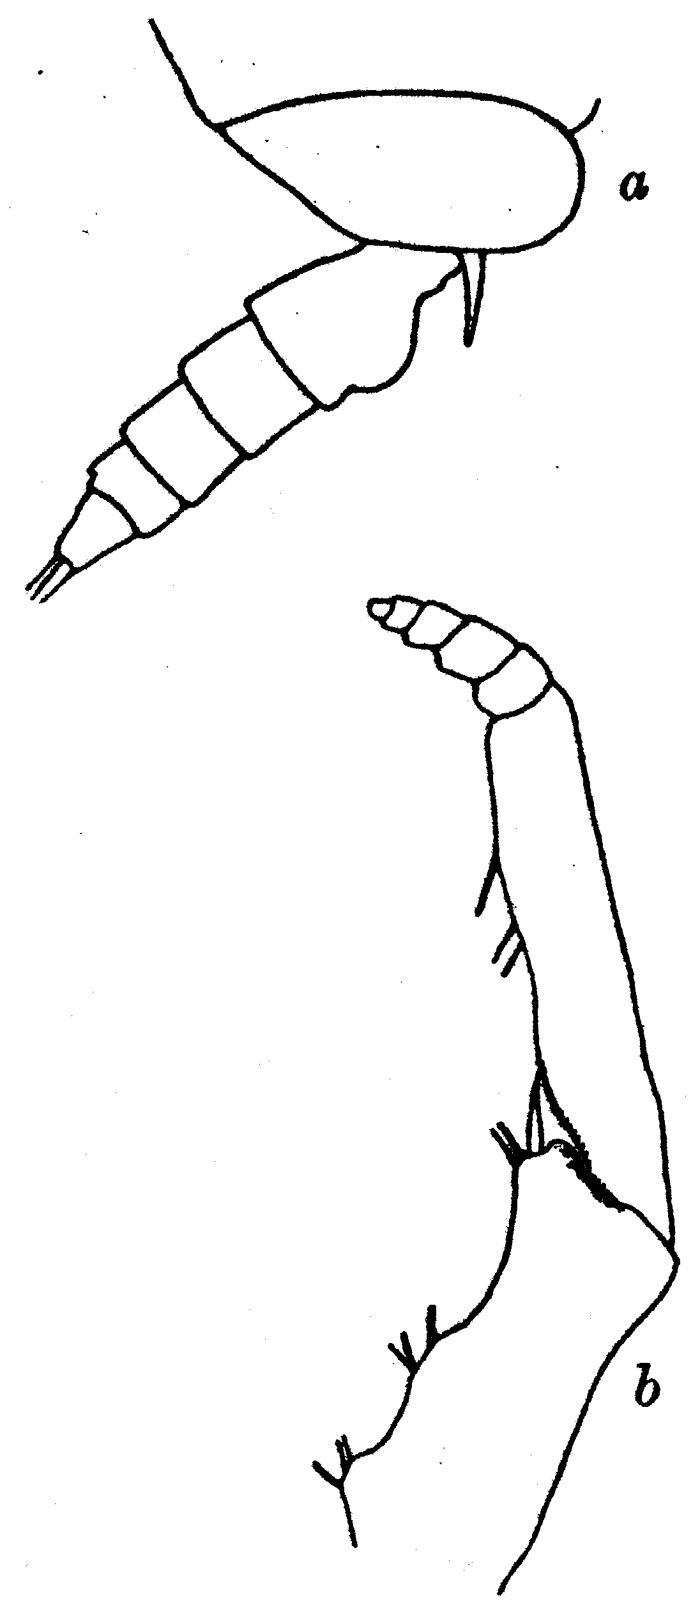 Espèce Gaetanus tenuispinus - Planche 15 de figures morphologiques